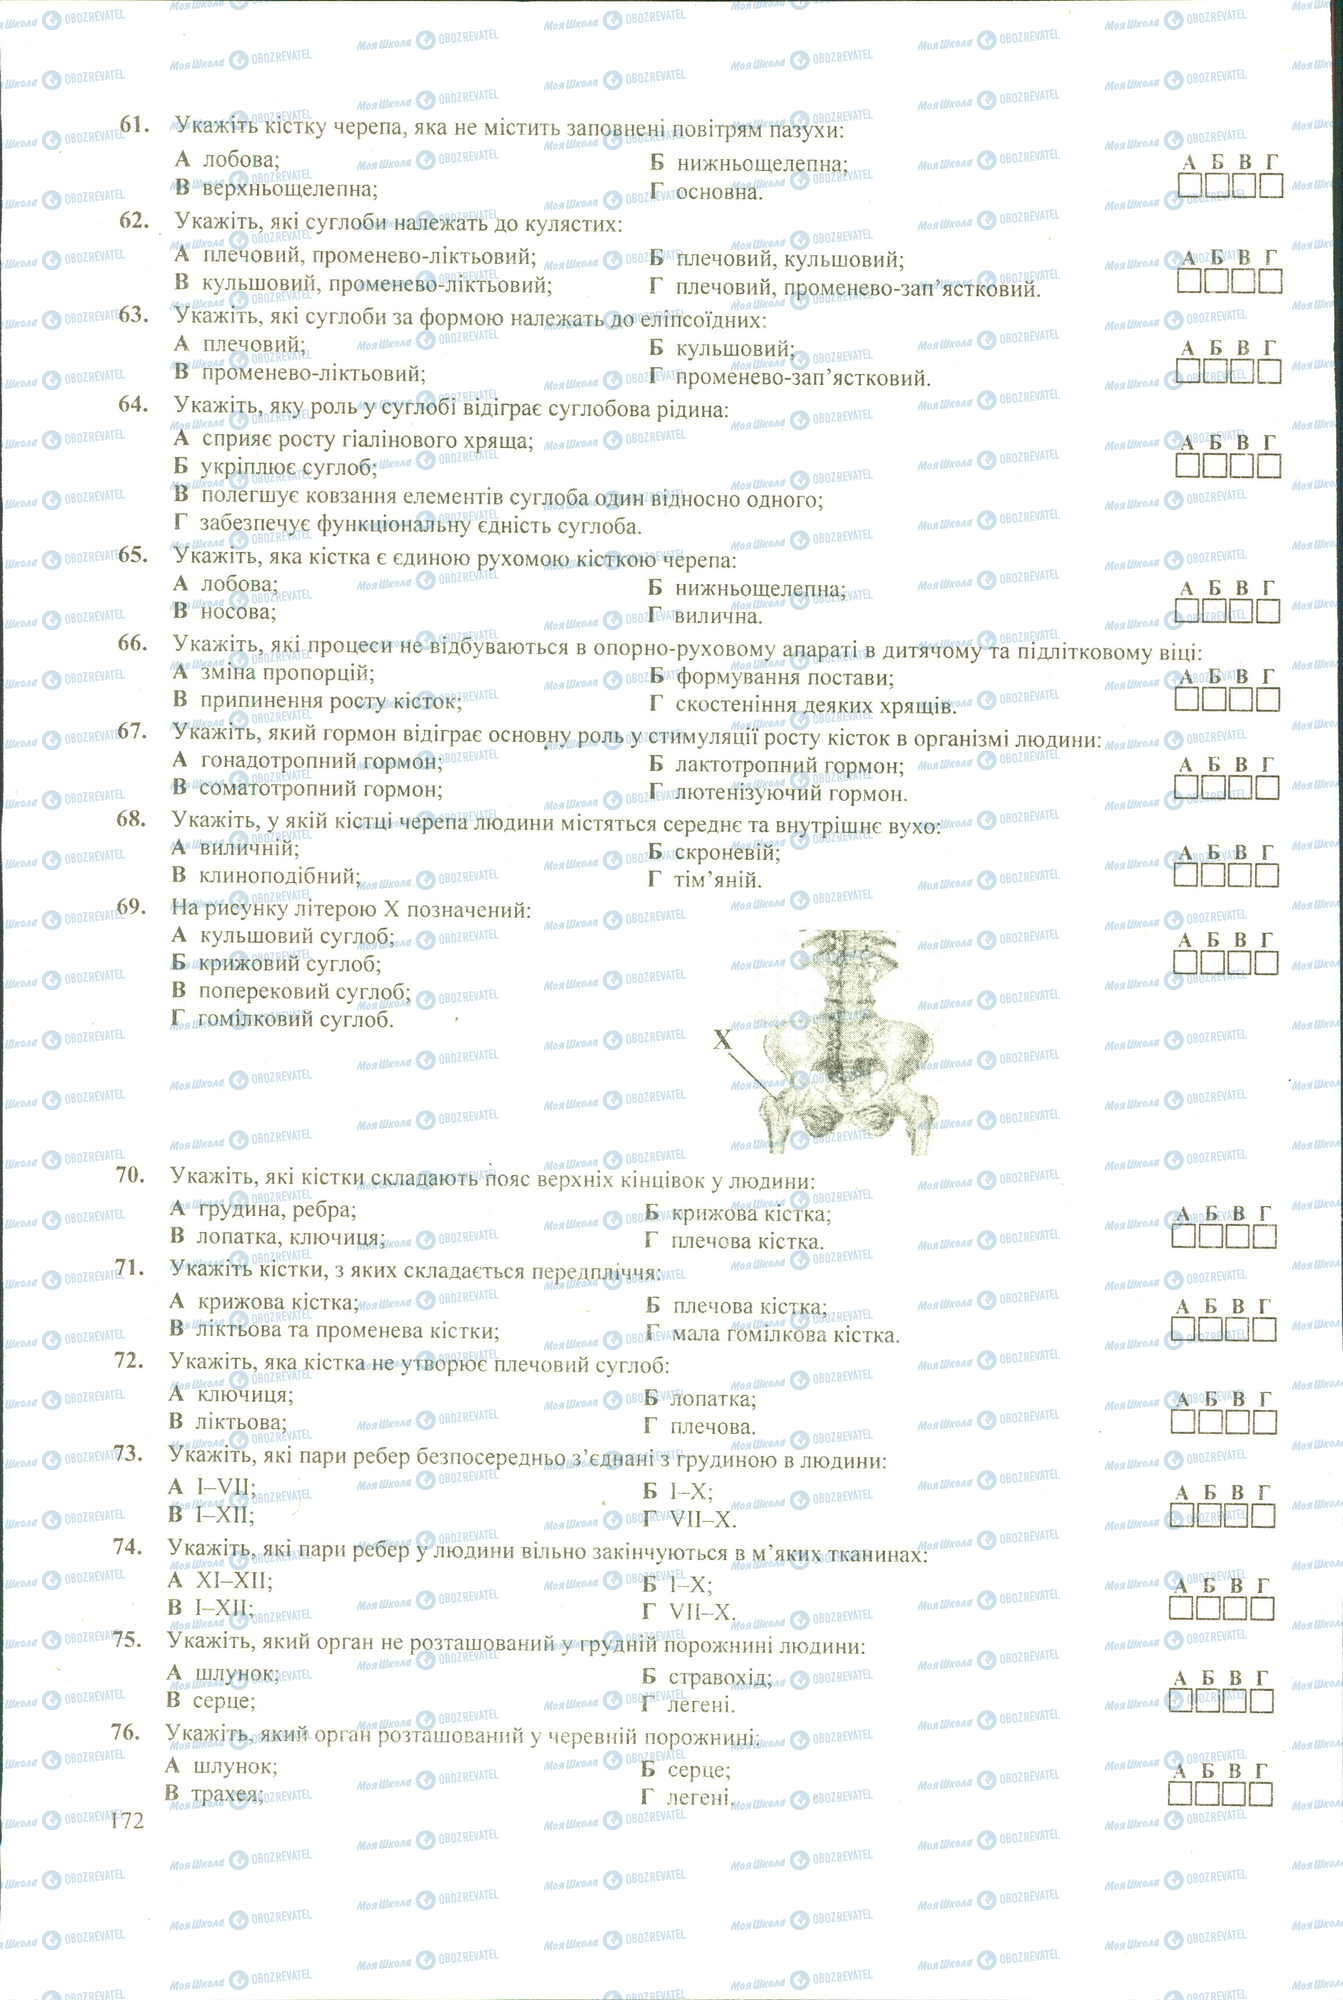 ЗНО Биология 11 класс страница 61-76